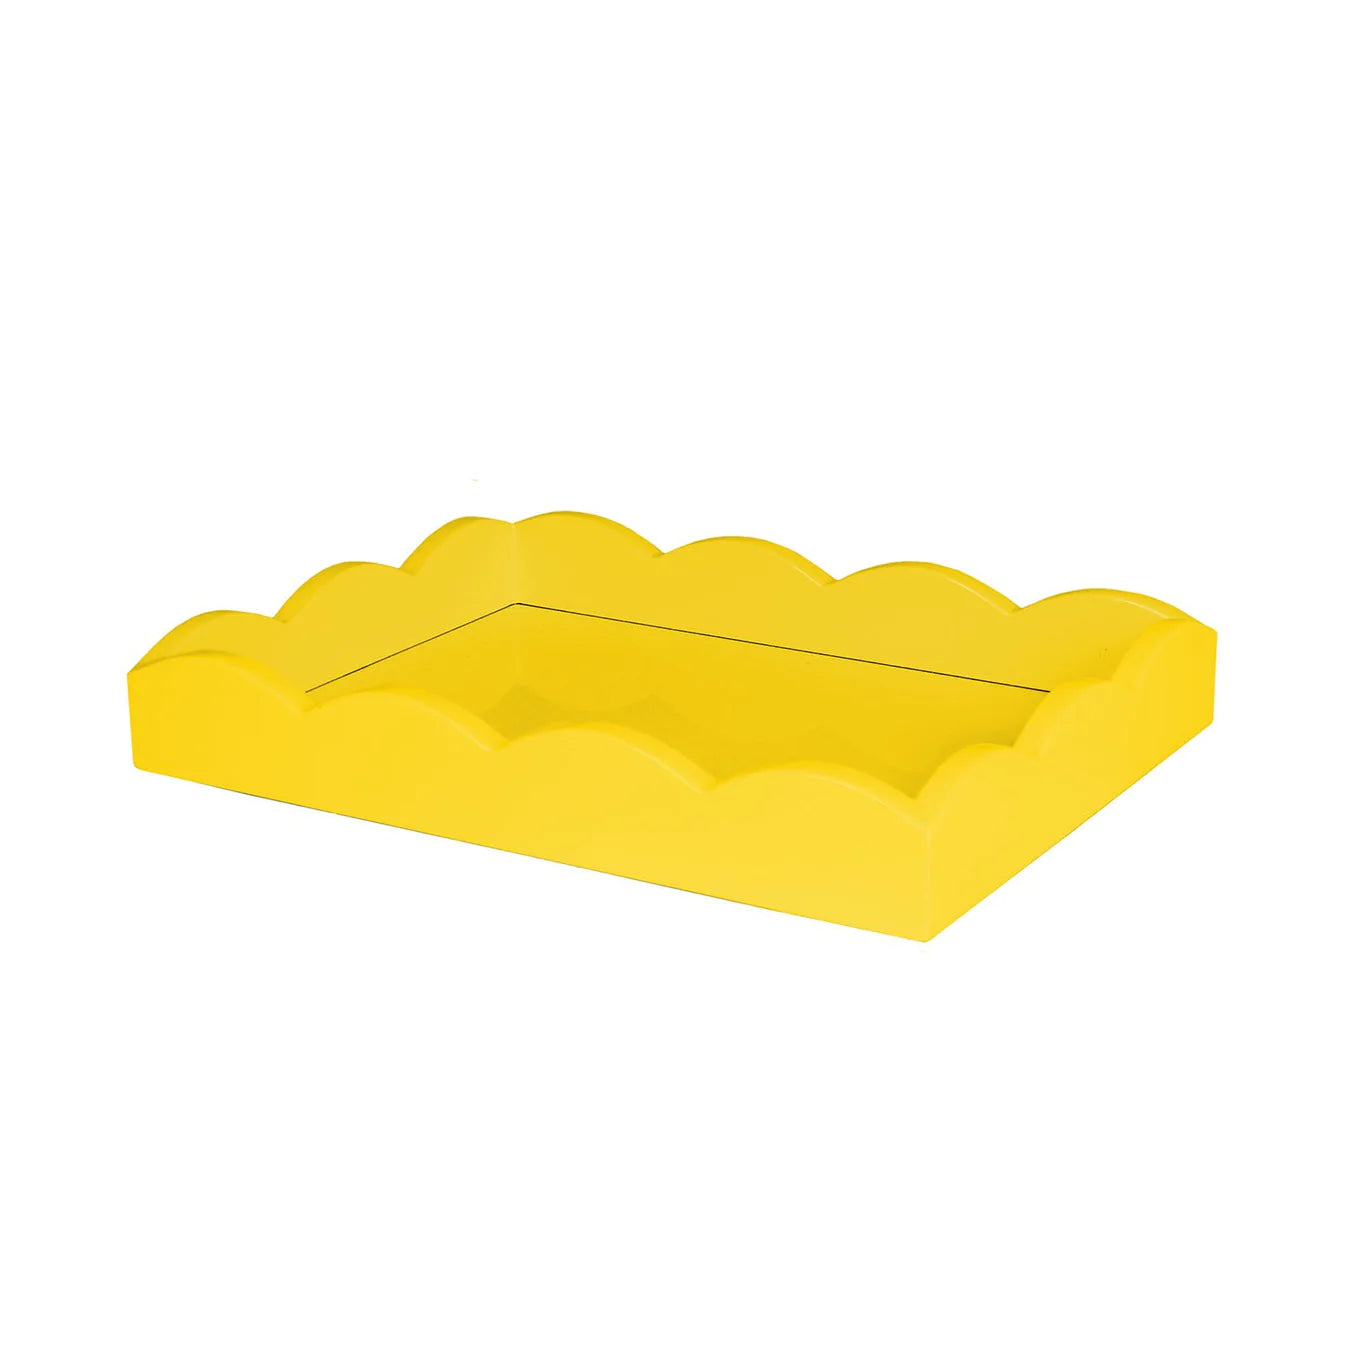 Yellow Scalloped Tray 11x8